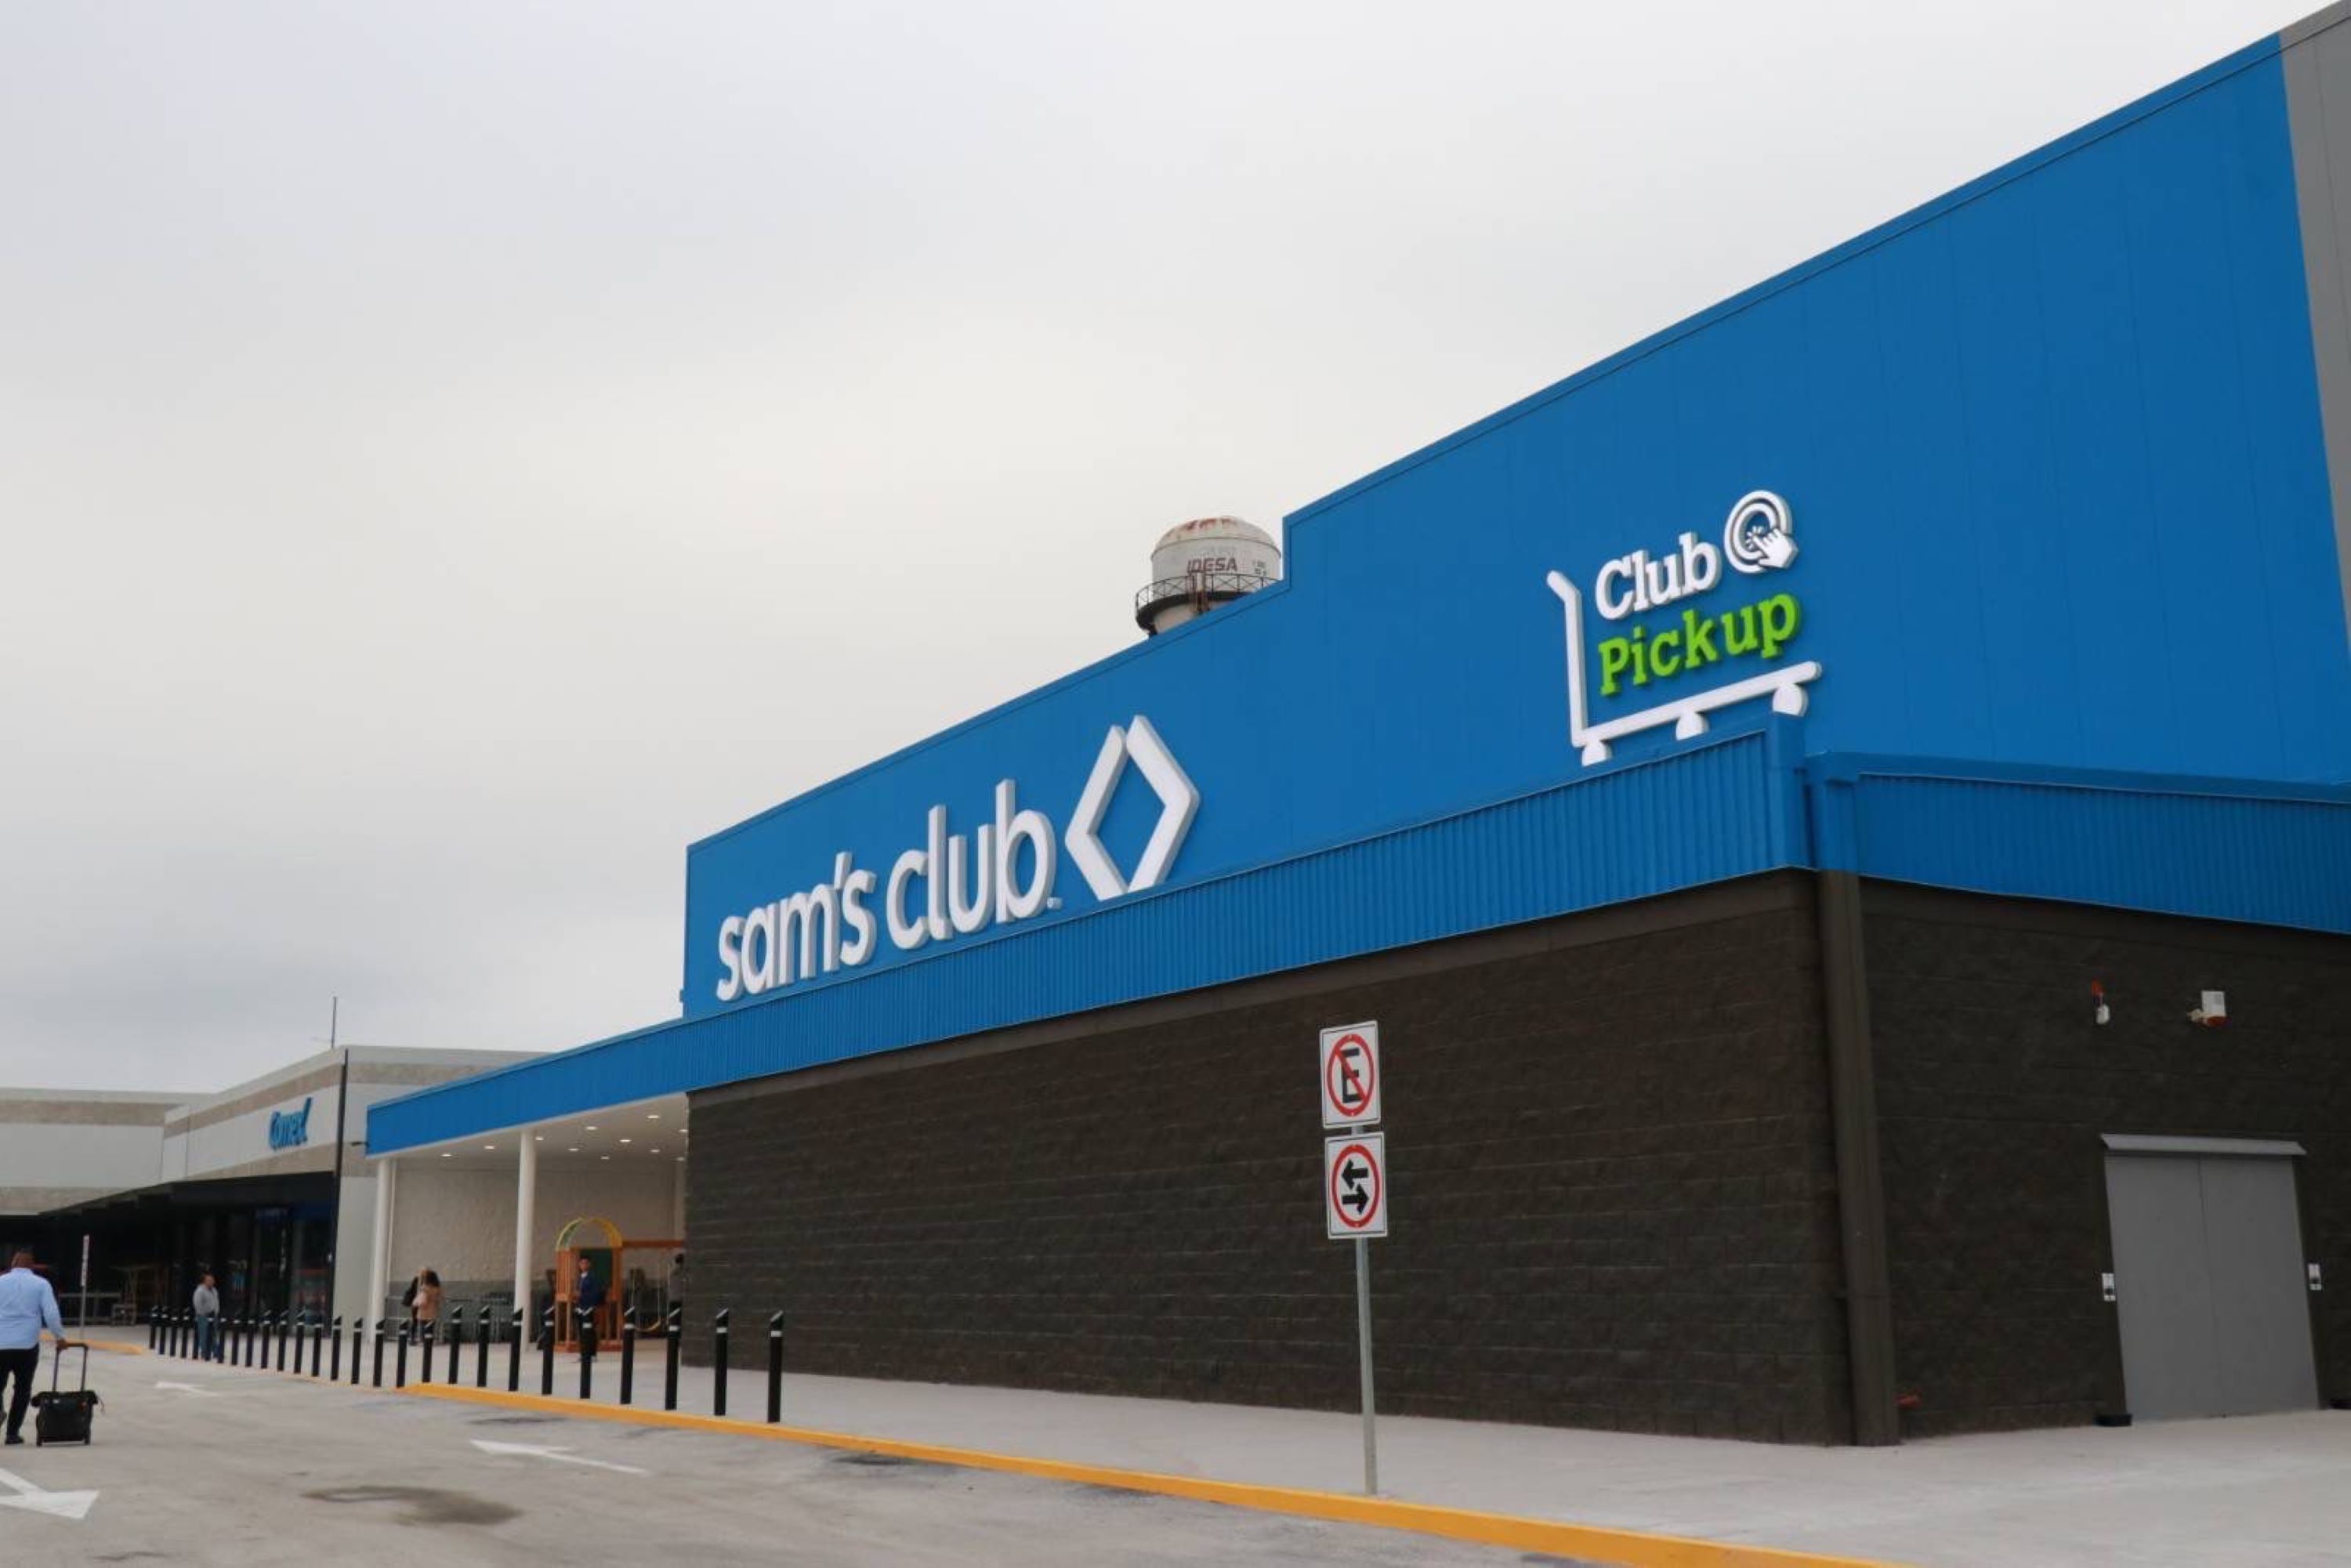 Sams Club abre en Puebla la tienda más grande del país; invirtió 290 mdp